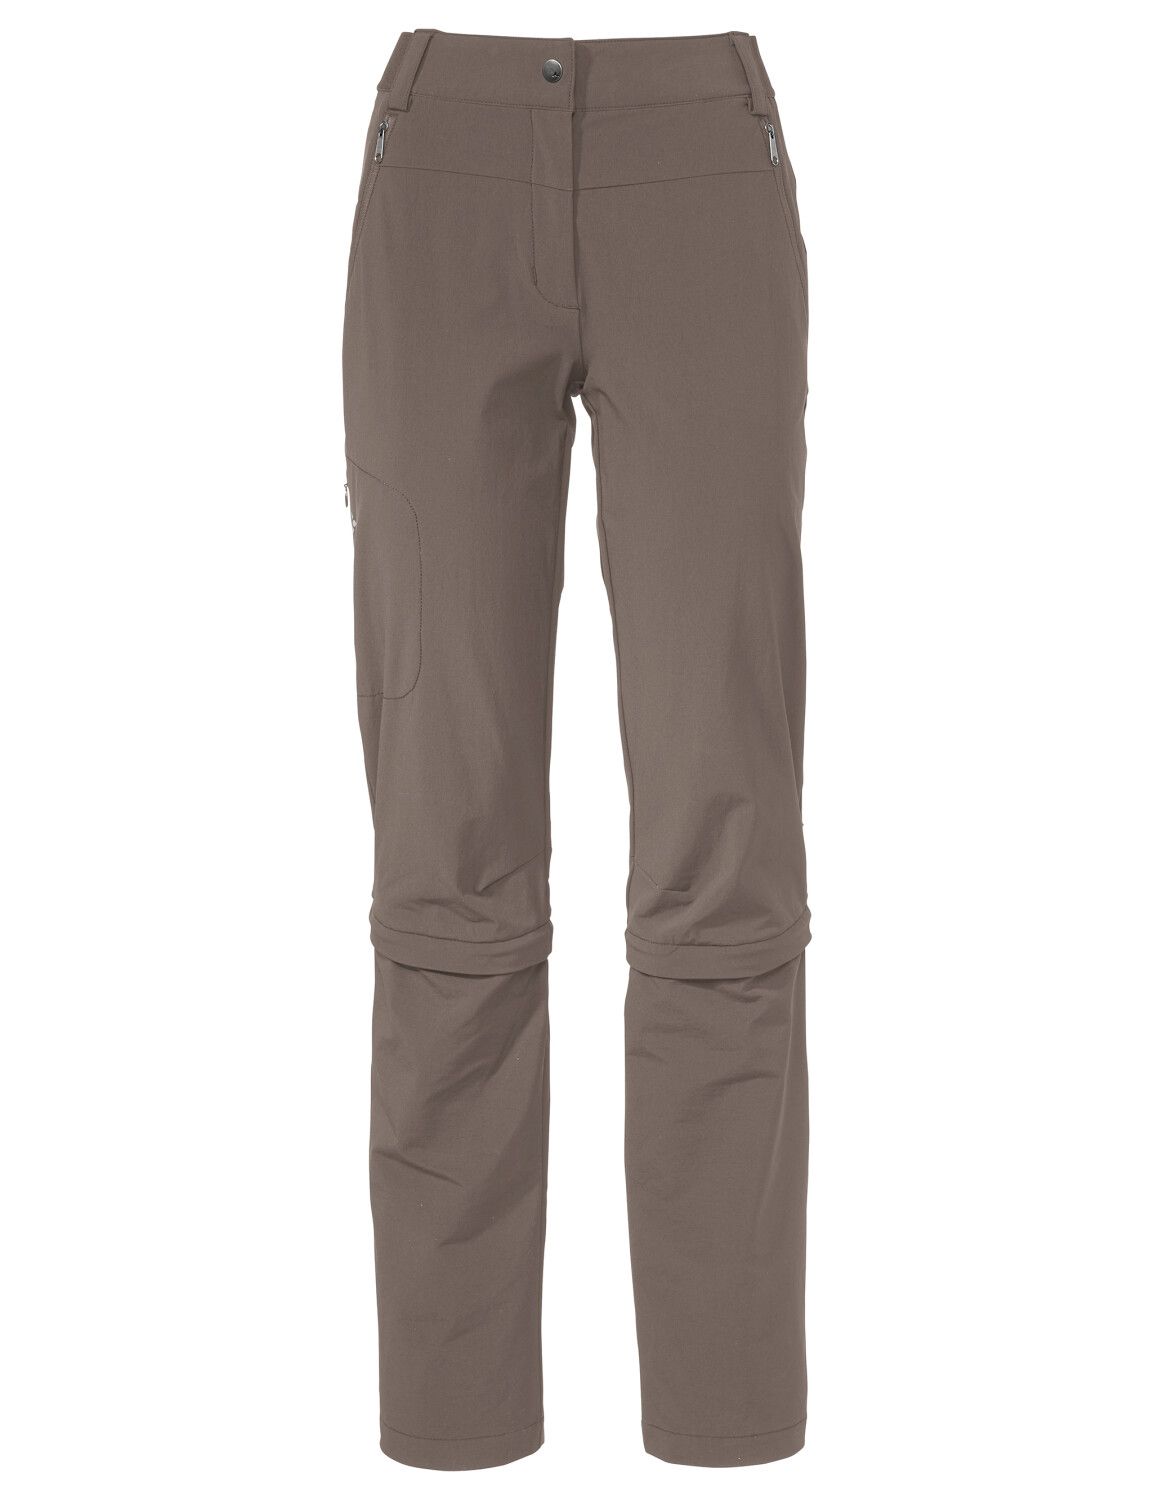 VAUDE Women's Farley Stretch Capri T-Zip Pants III (Bild 52)